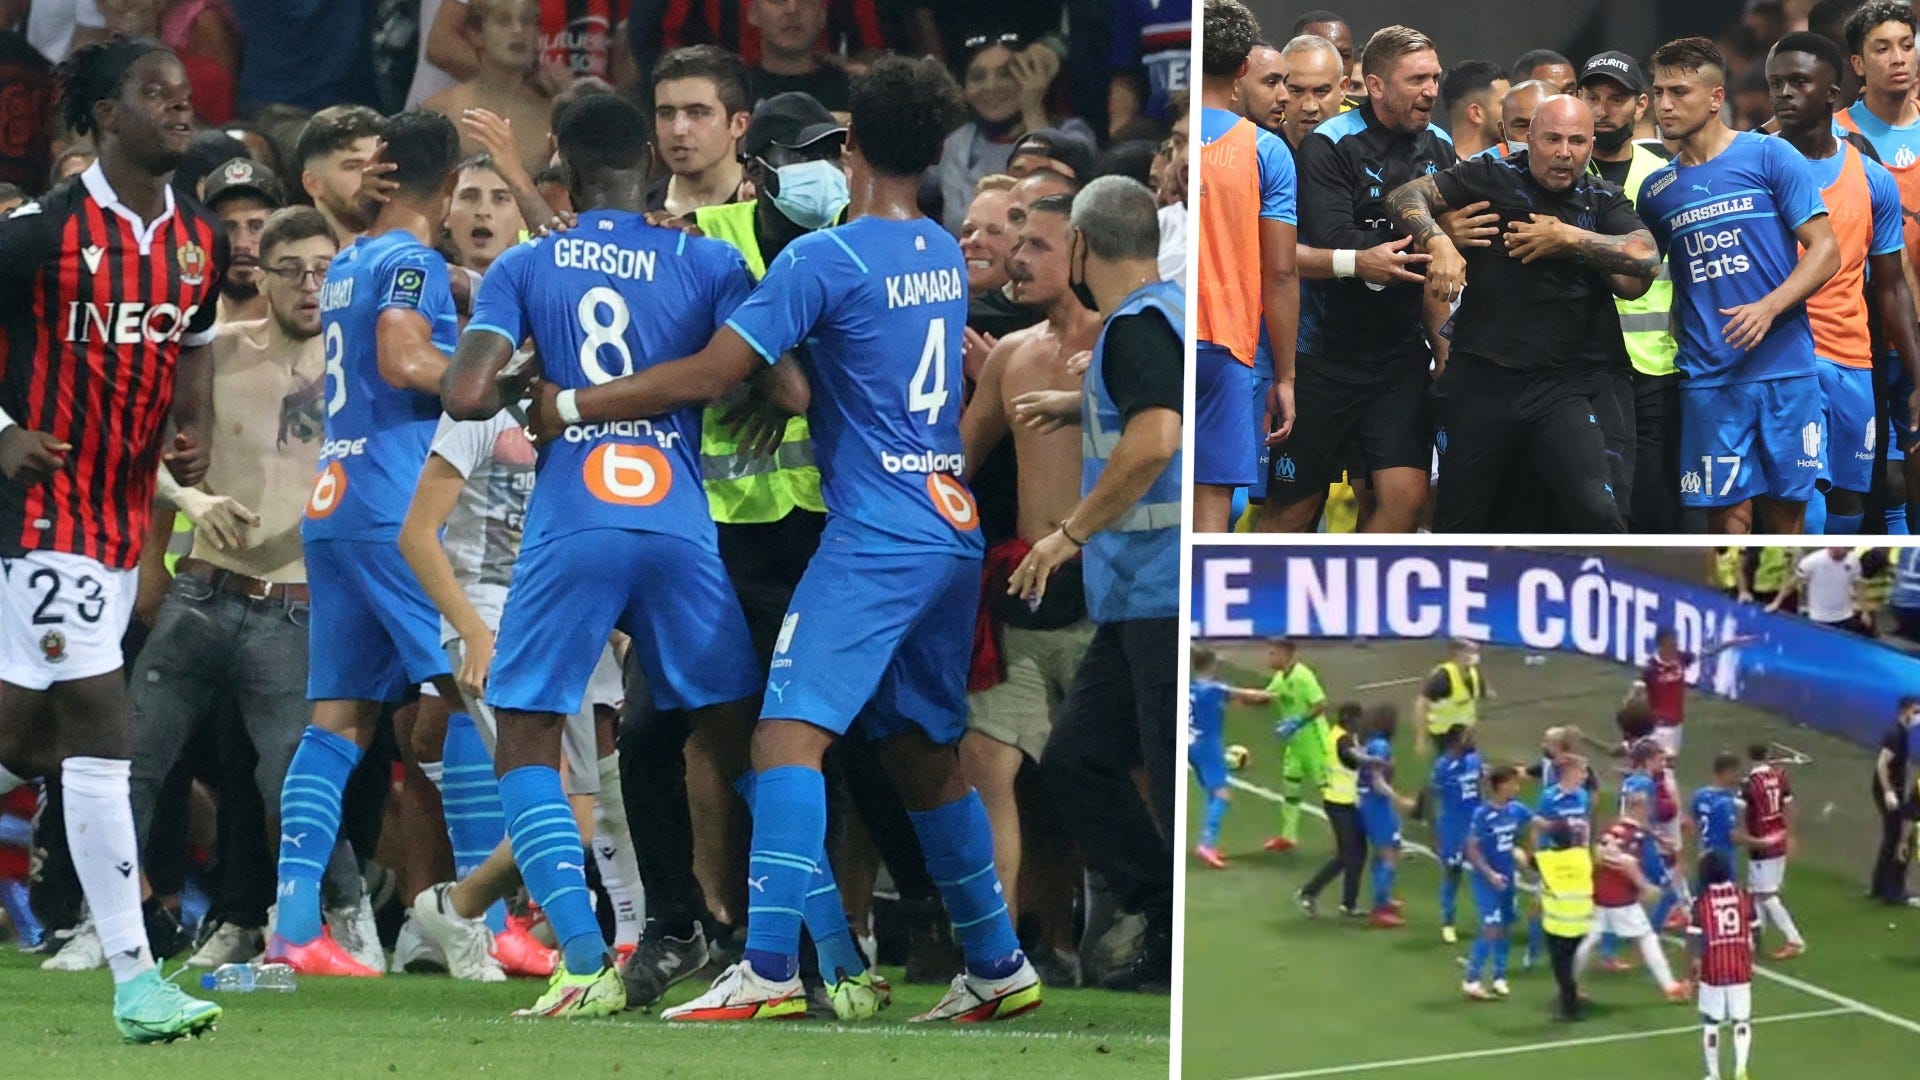 ニースとマルセイユの一戦でファンが乱闘騒ぎの暴徒化 試合途中で打ち切りに Goal Com 日本